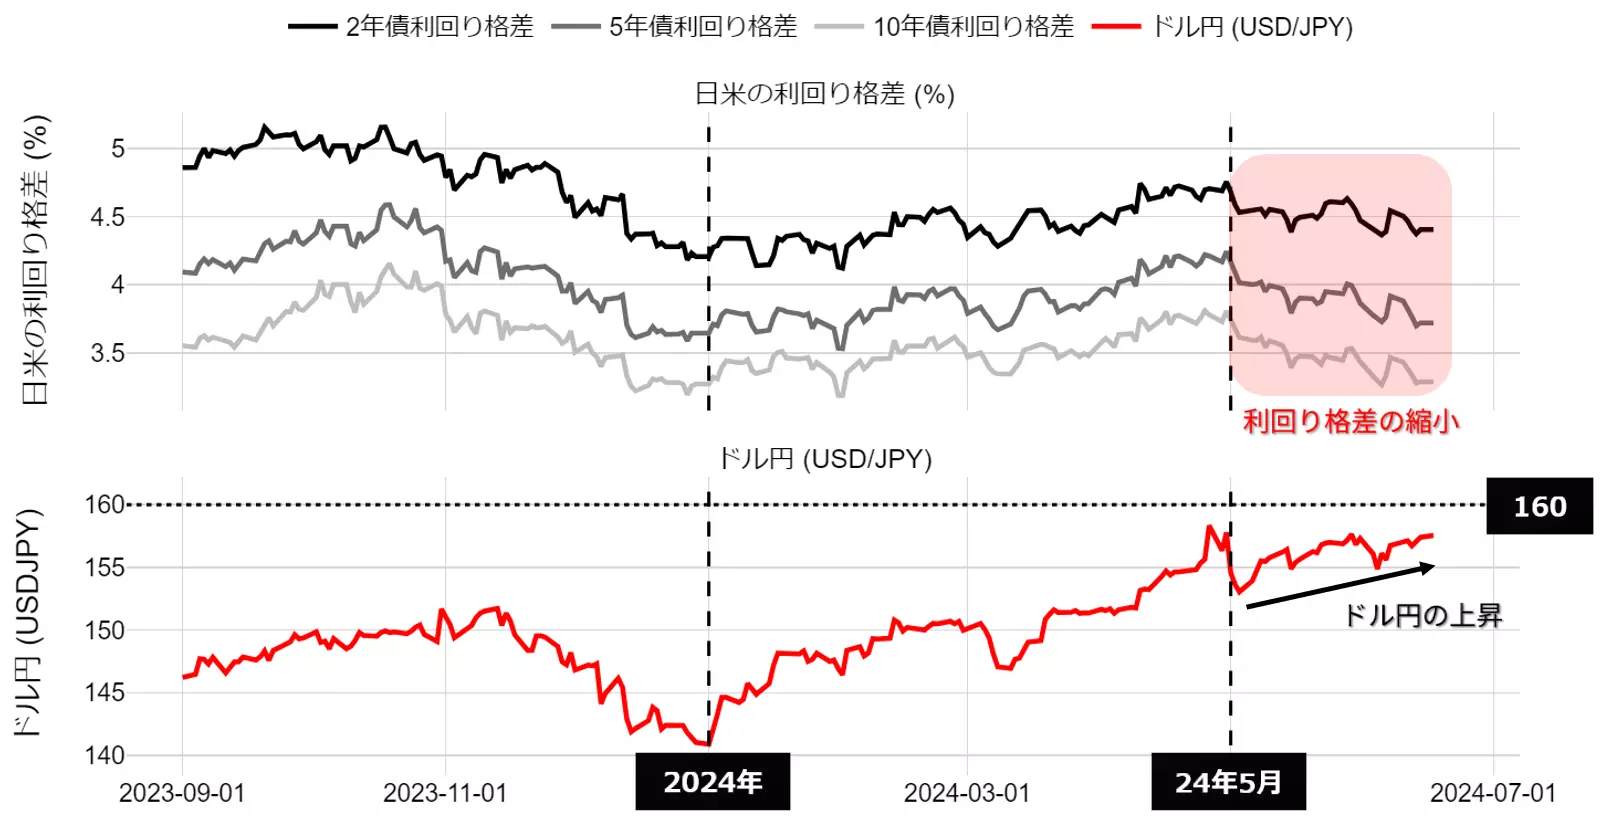 日米の利回り格差とドル円の動向：23年9月以降